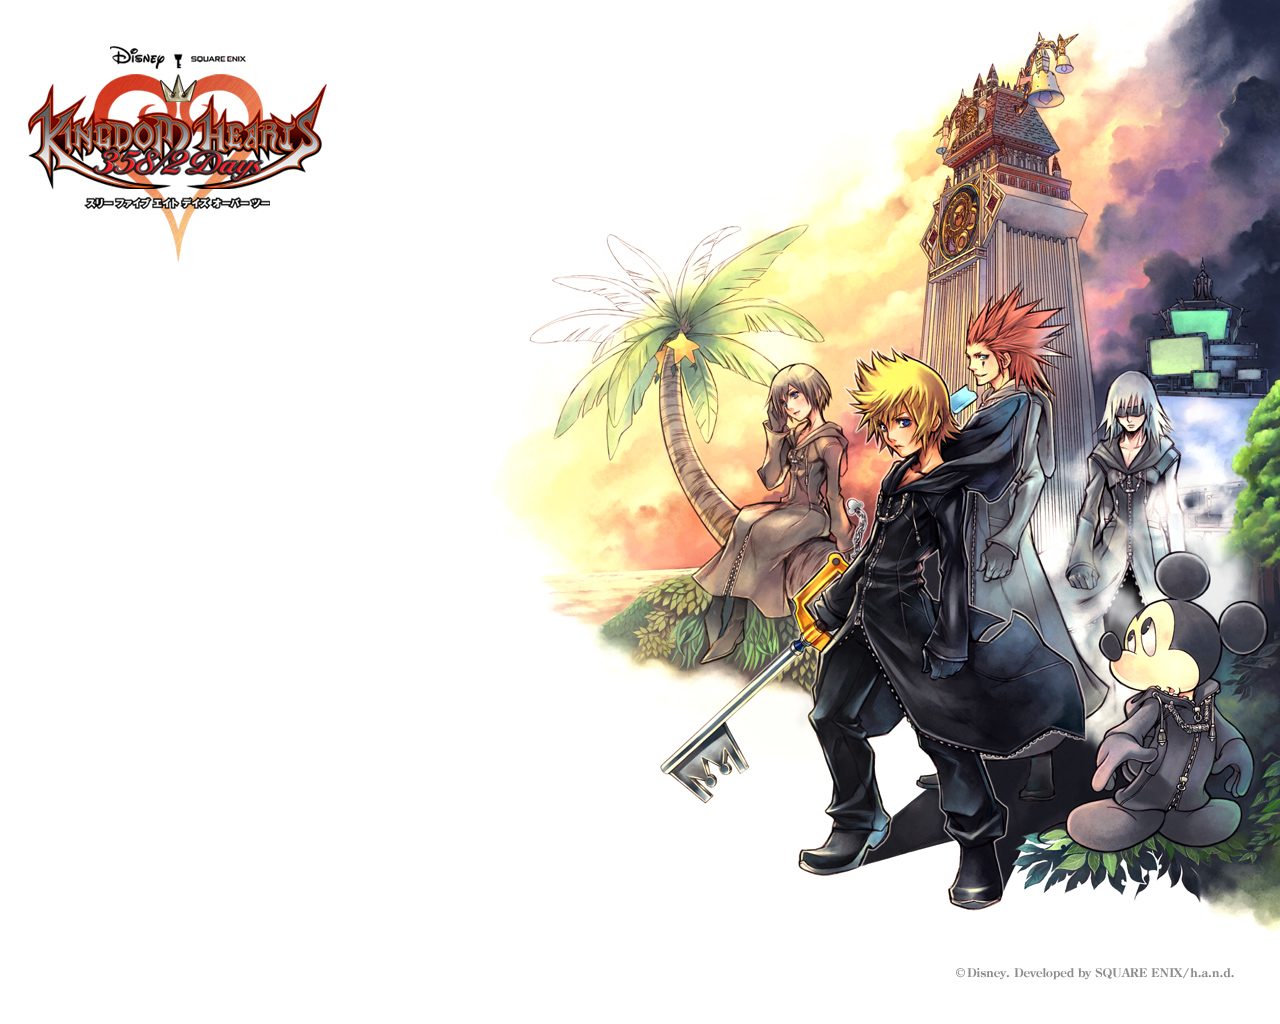 Fond ecran wallpaper Kingdom Hearts 358 2 Days   JeuxVideofr